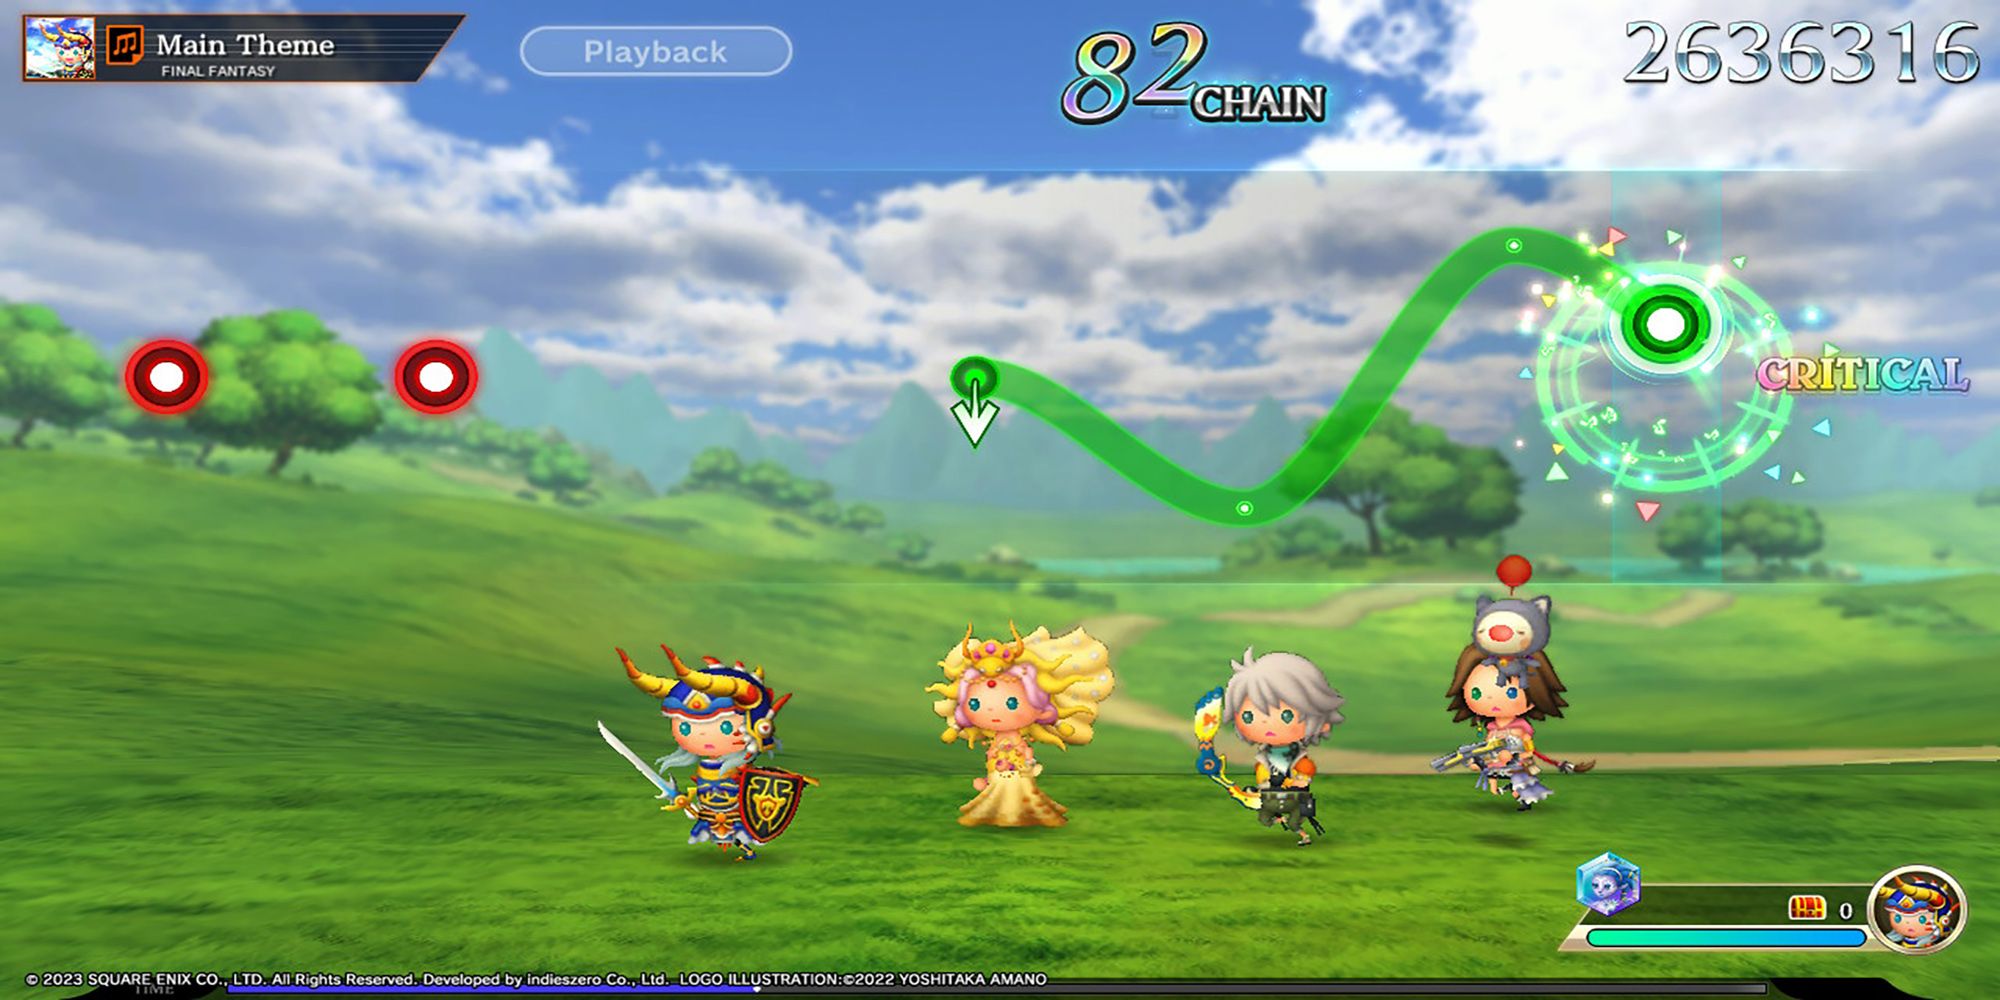 Воин Света, Принцесса Сара, Хоуп и Юна путешествуют по полю к Главной Теме Final Fantasy в Theatrhythm: Final Bar Line.